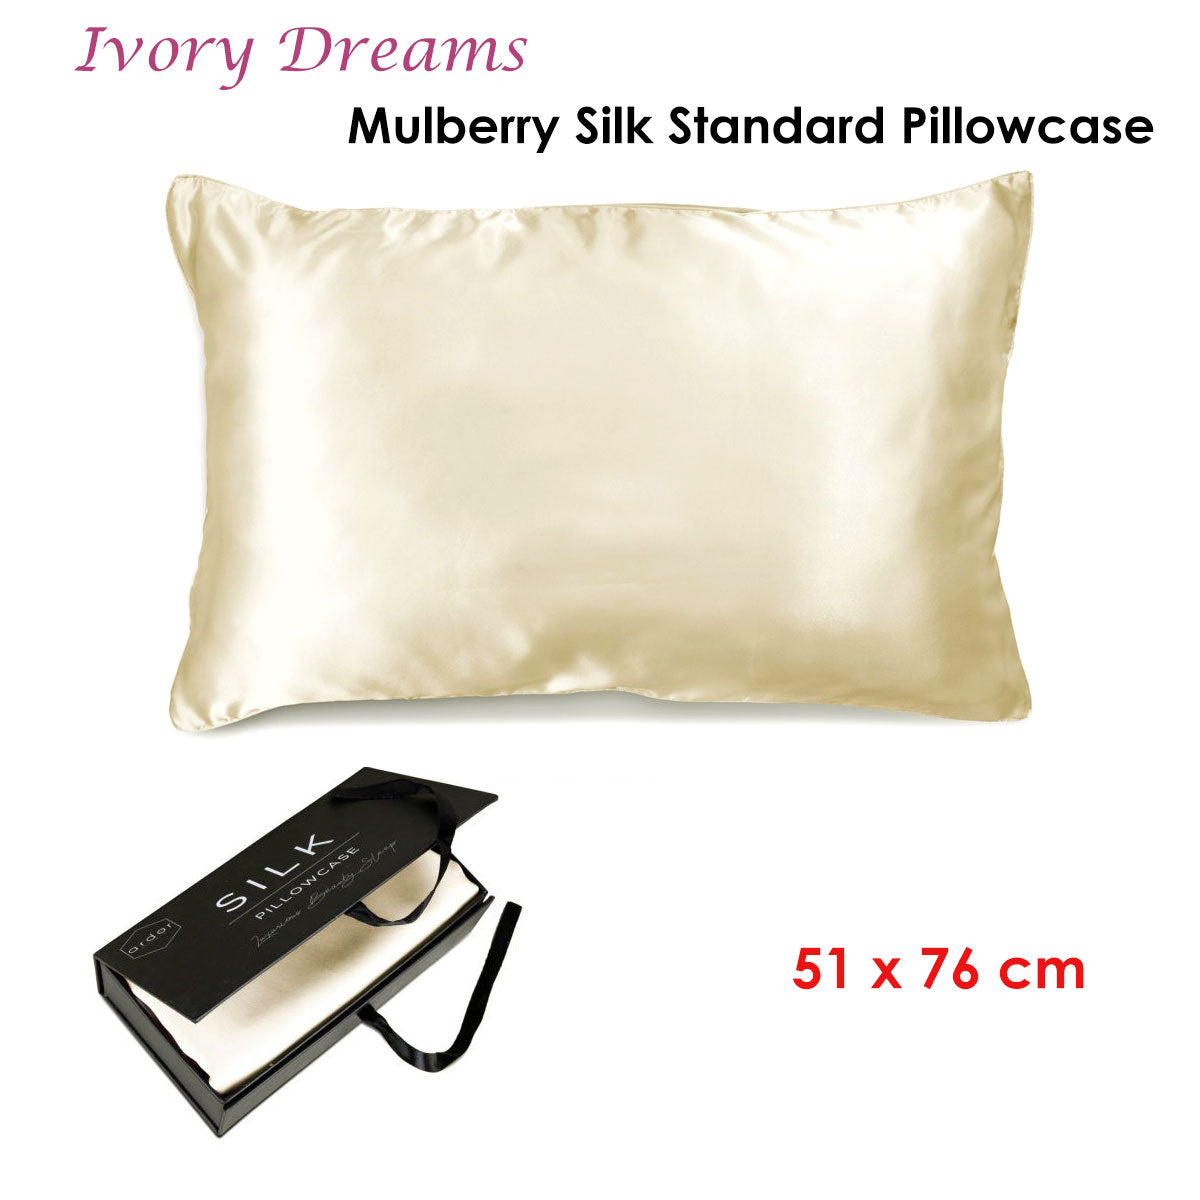 Ardor Mulberry Silk Standard Pillowcase Ivory Dreams - Home & Garden > Bedding - Zanlana Design and Home Decor